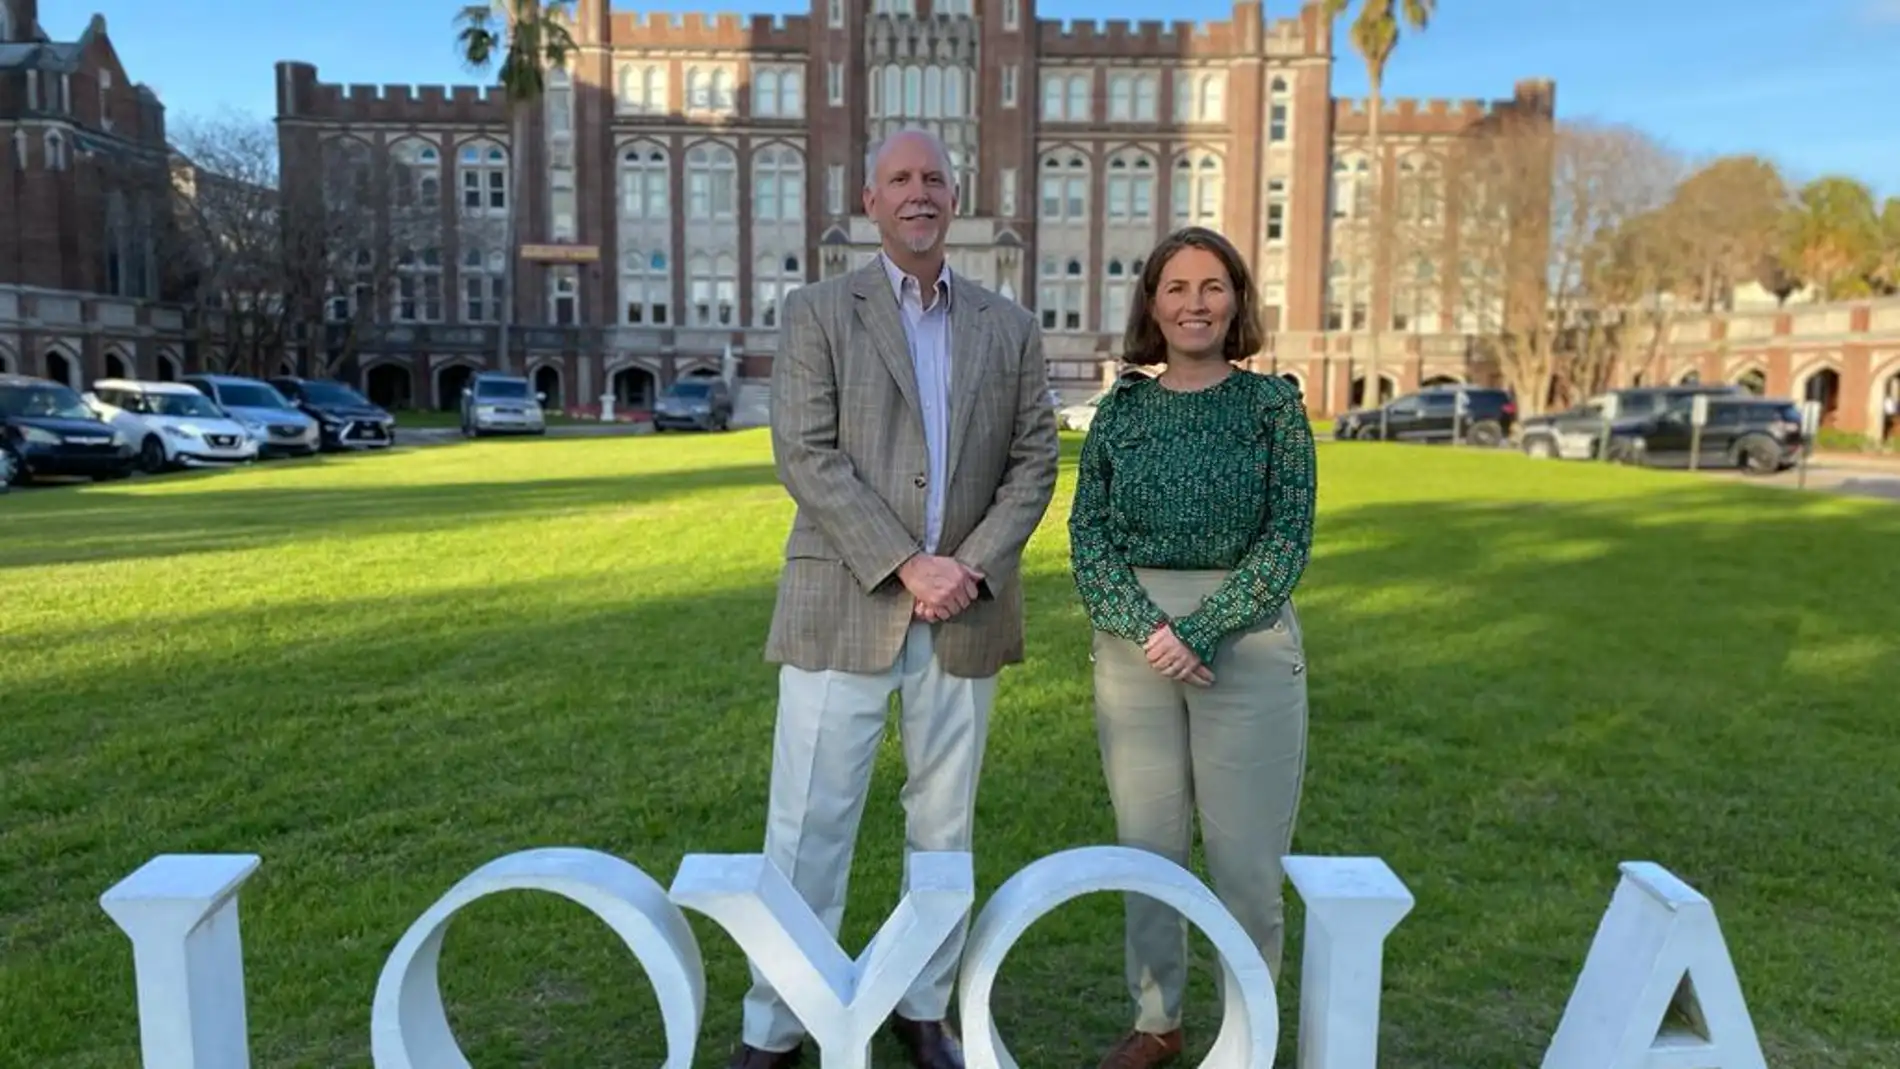 La Universidad Loyola impartirá un nuevo grado internacional dual gracias al acuerdo con Loyola New Orleans